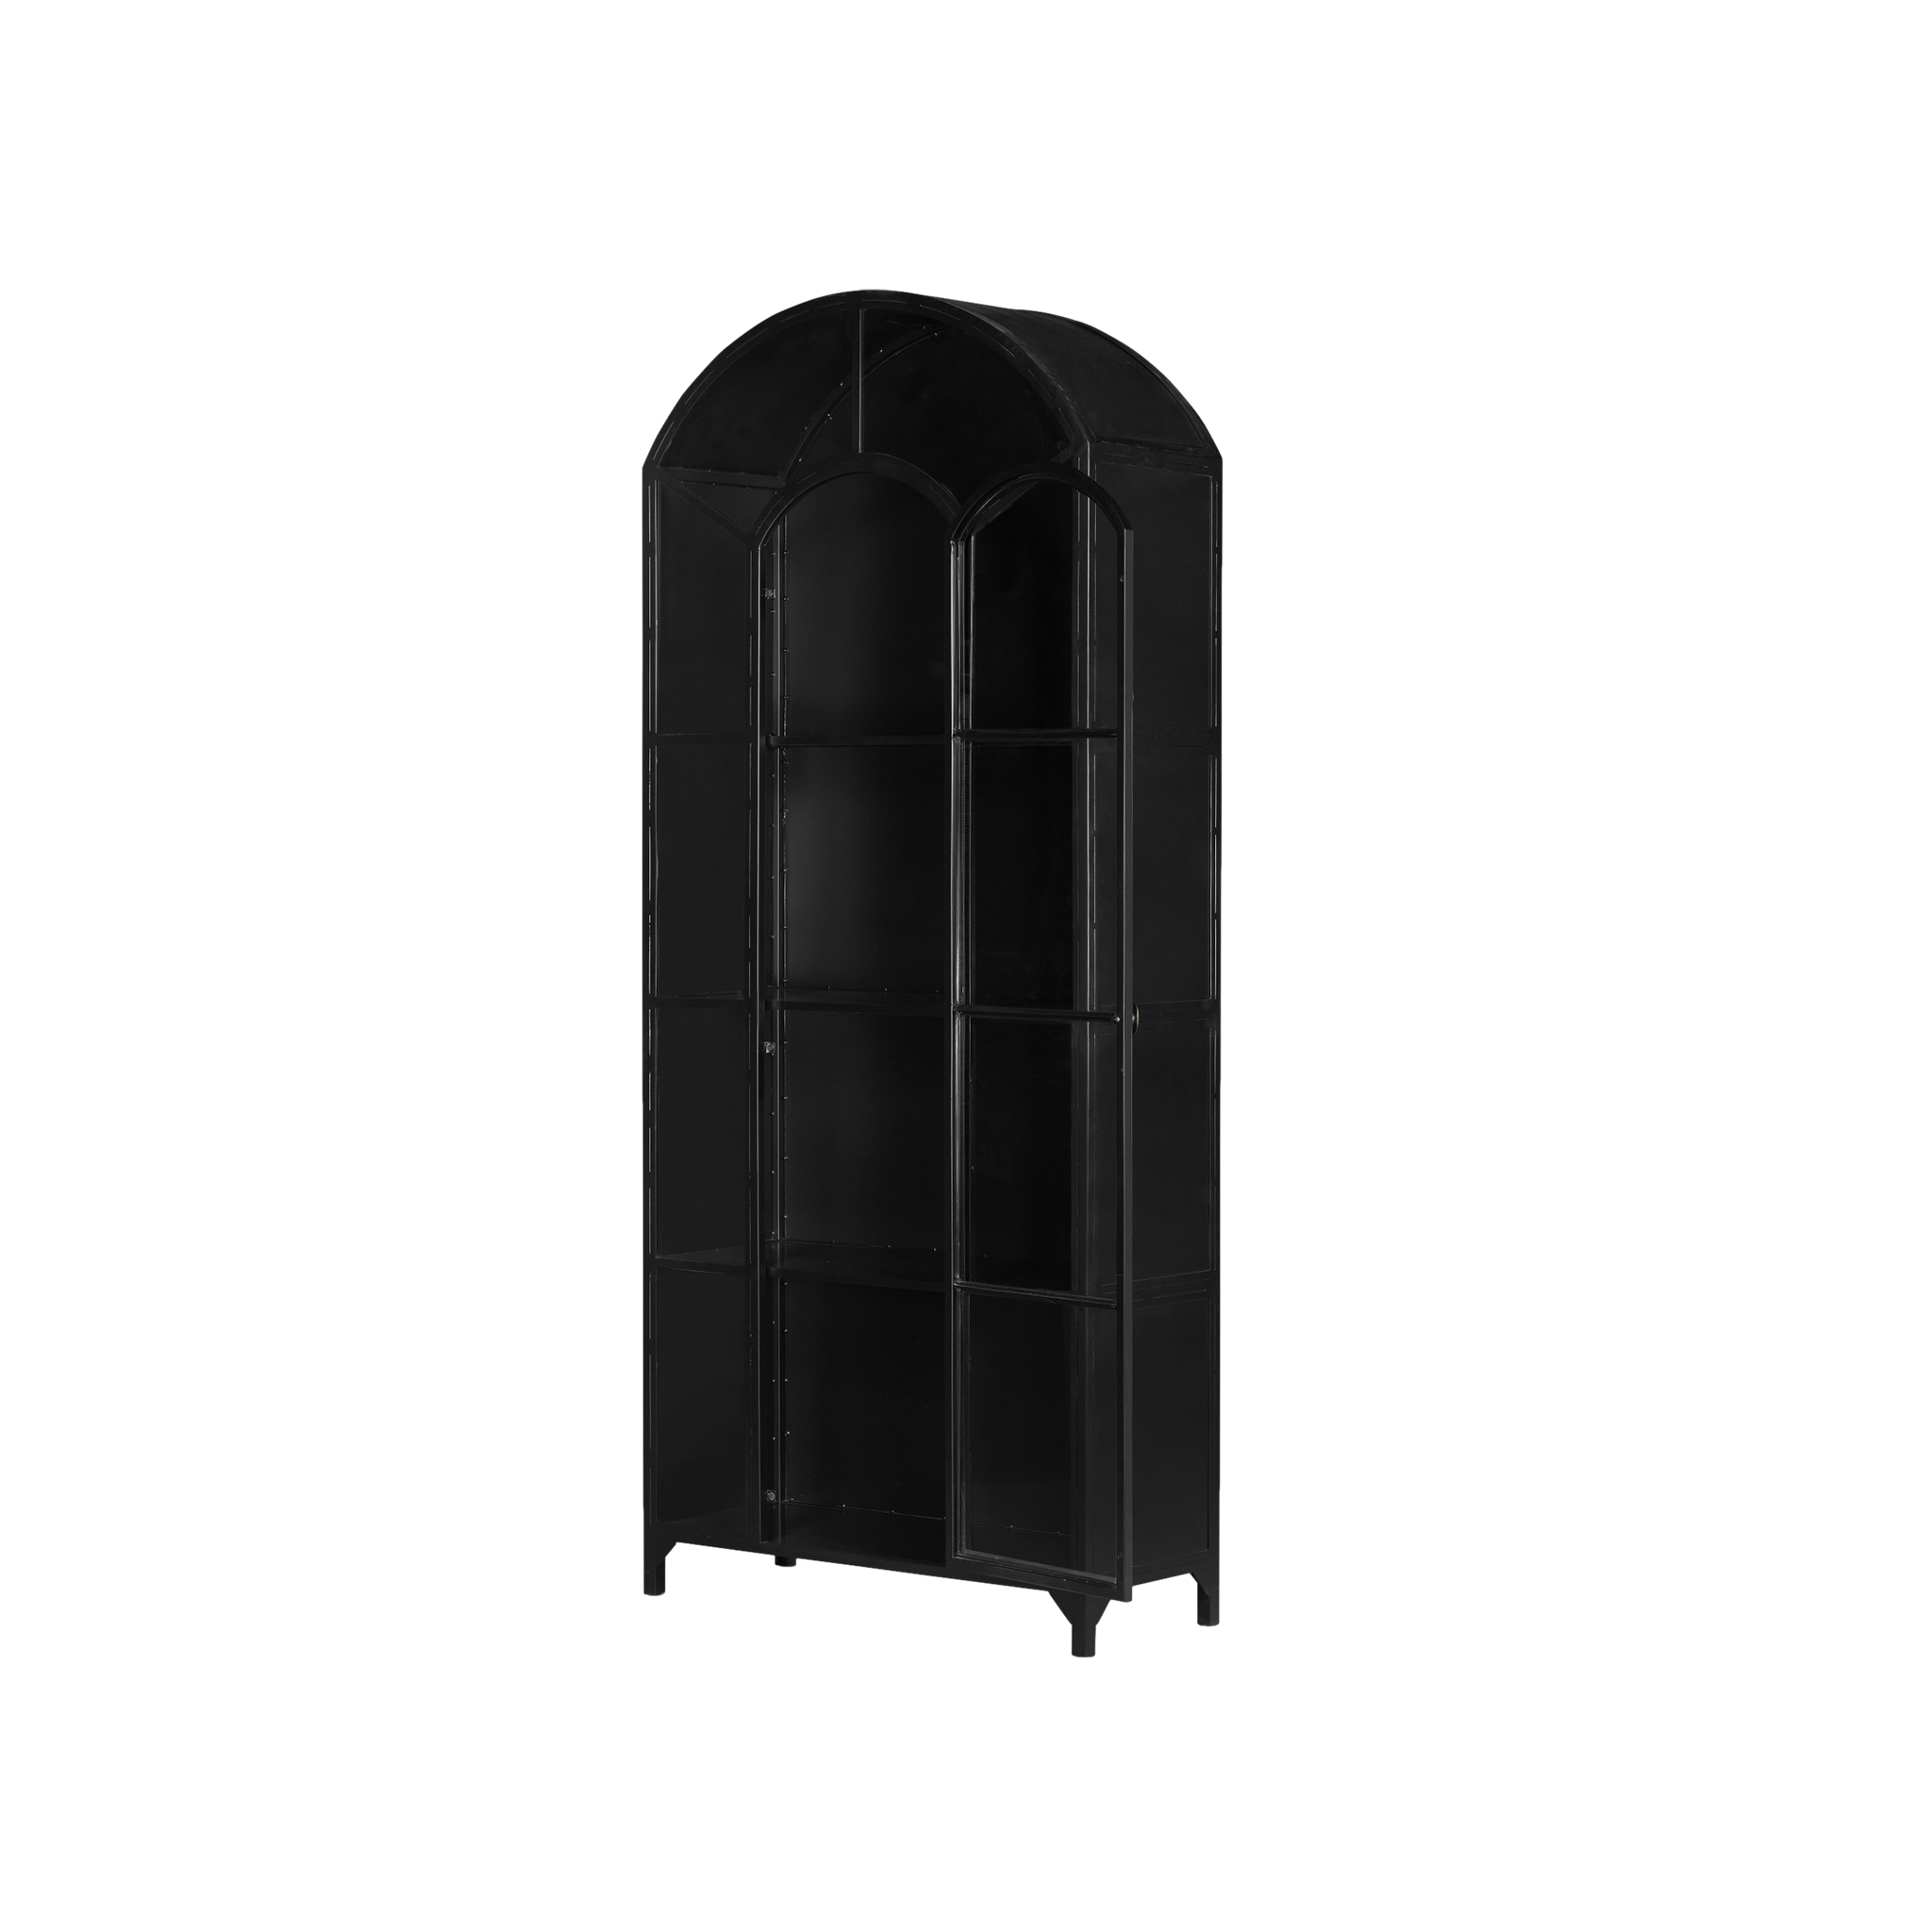 Belmont Cabinet in Black